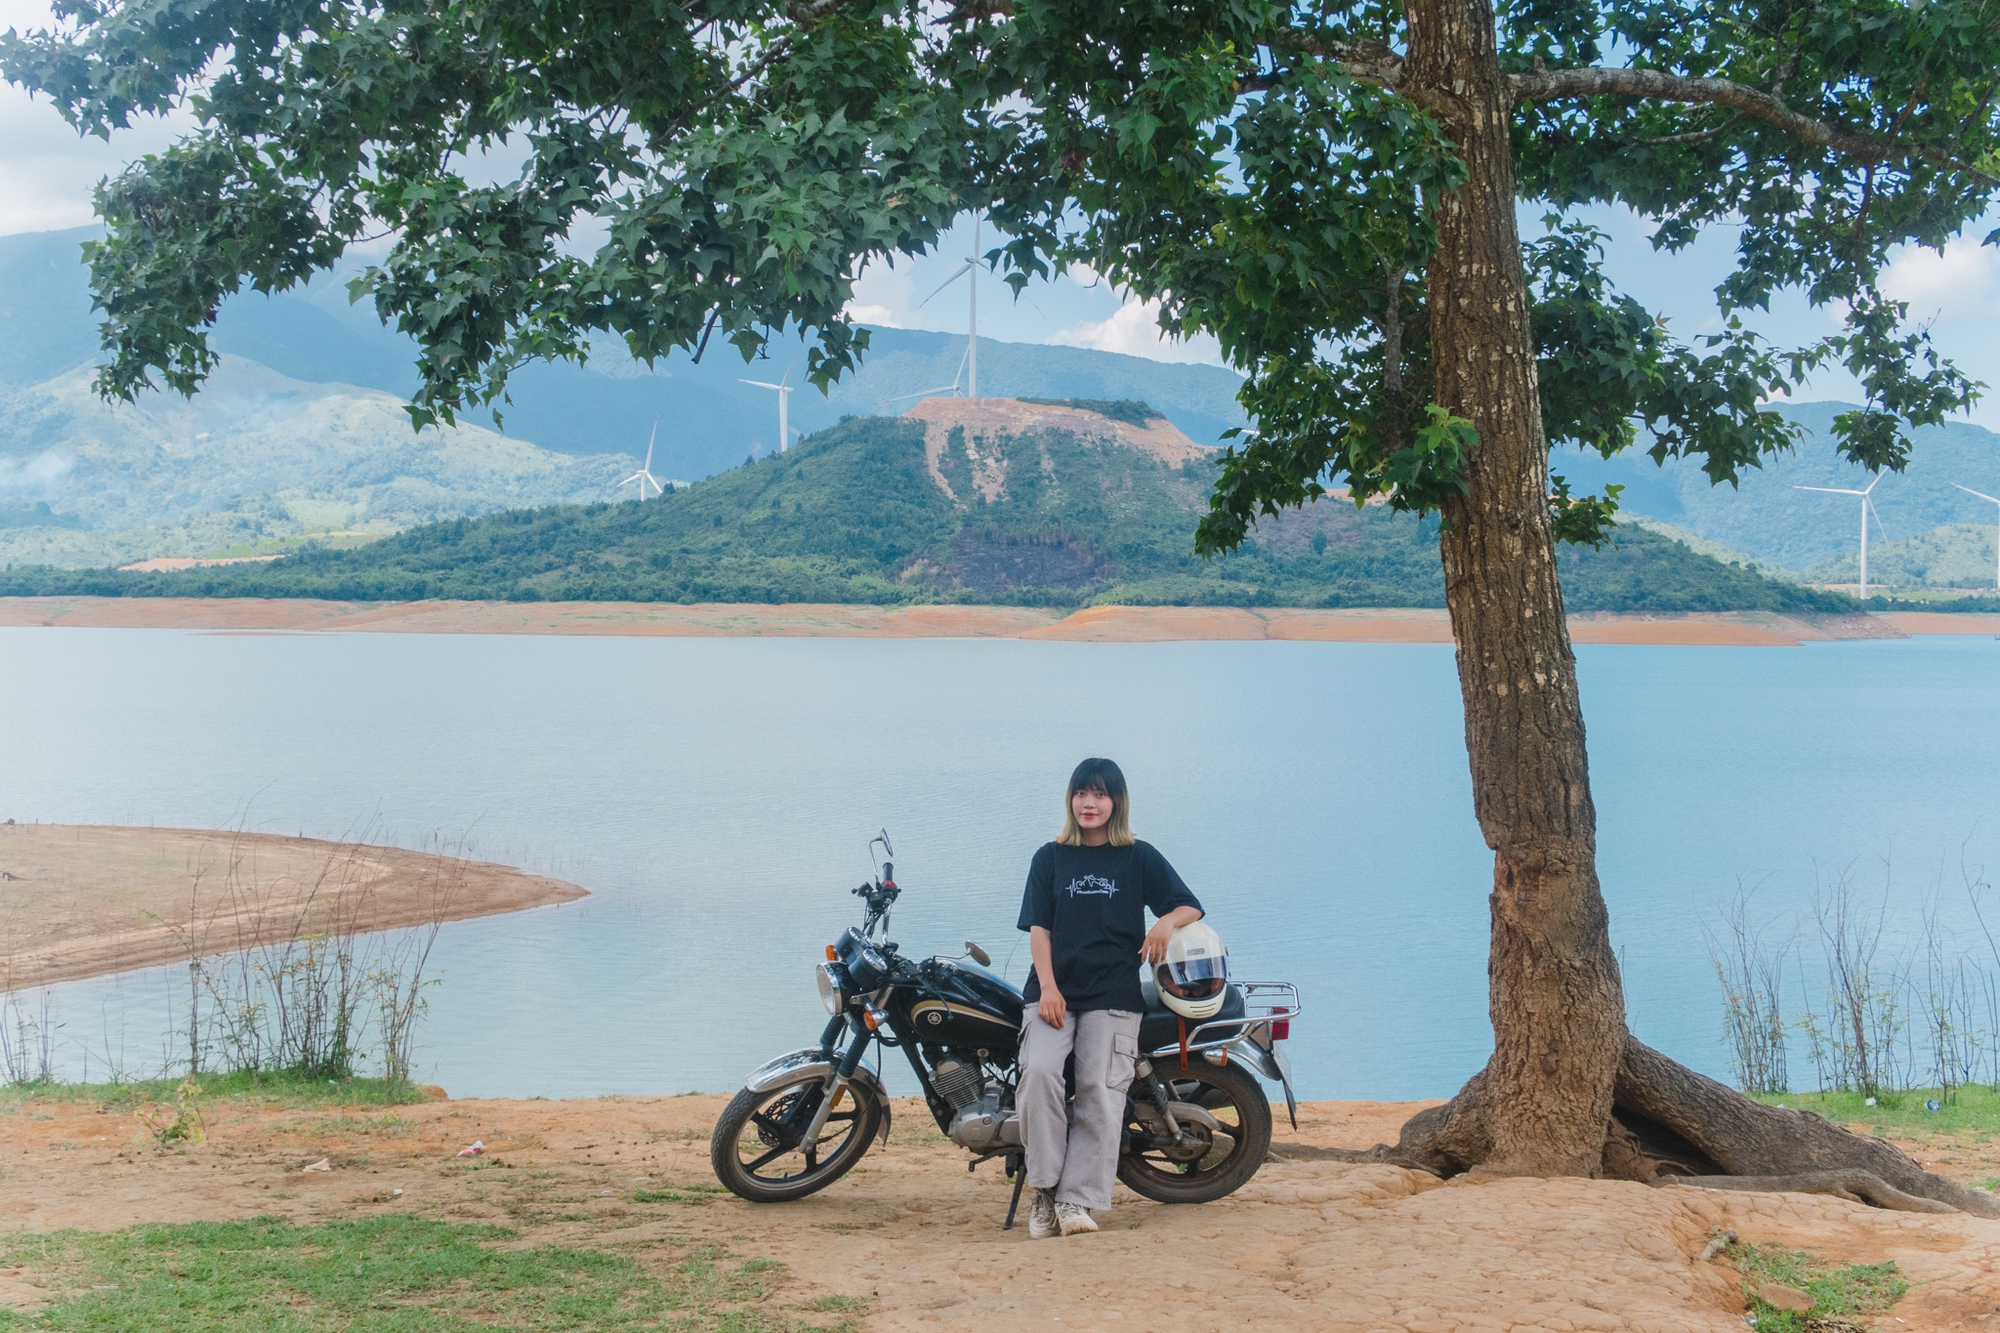 Đón tuổi 25, nàng GenZ quyết định thực hiện chuyến đi để đời: Phượt xe máy xuyên Việt một mình - Ảnh 12.